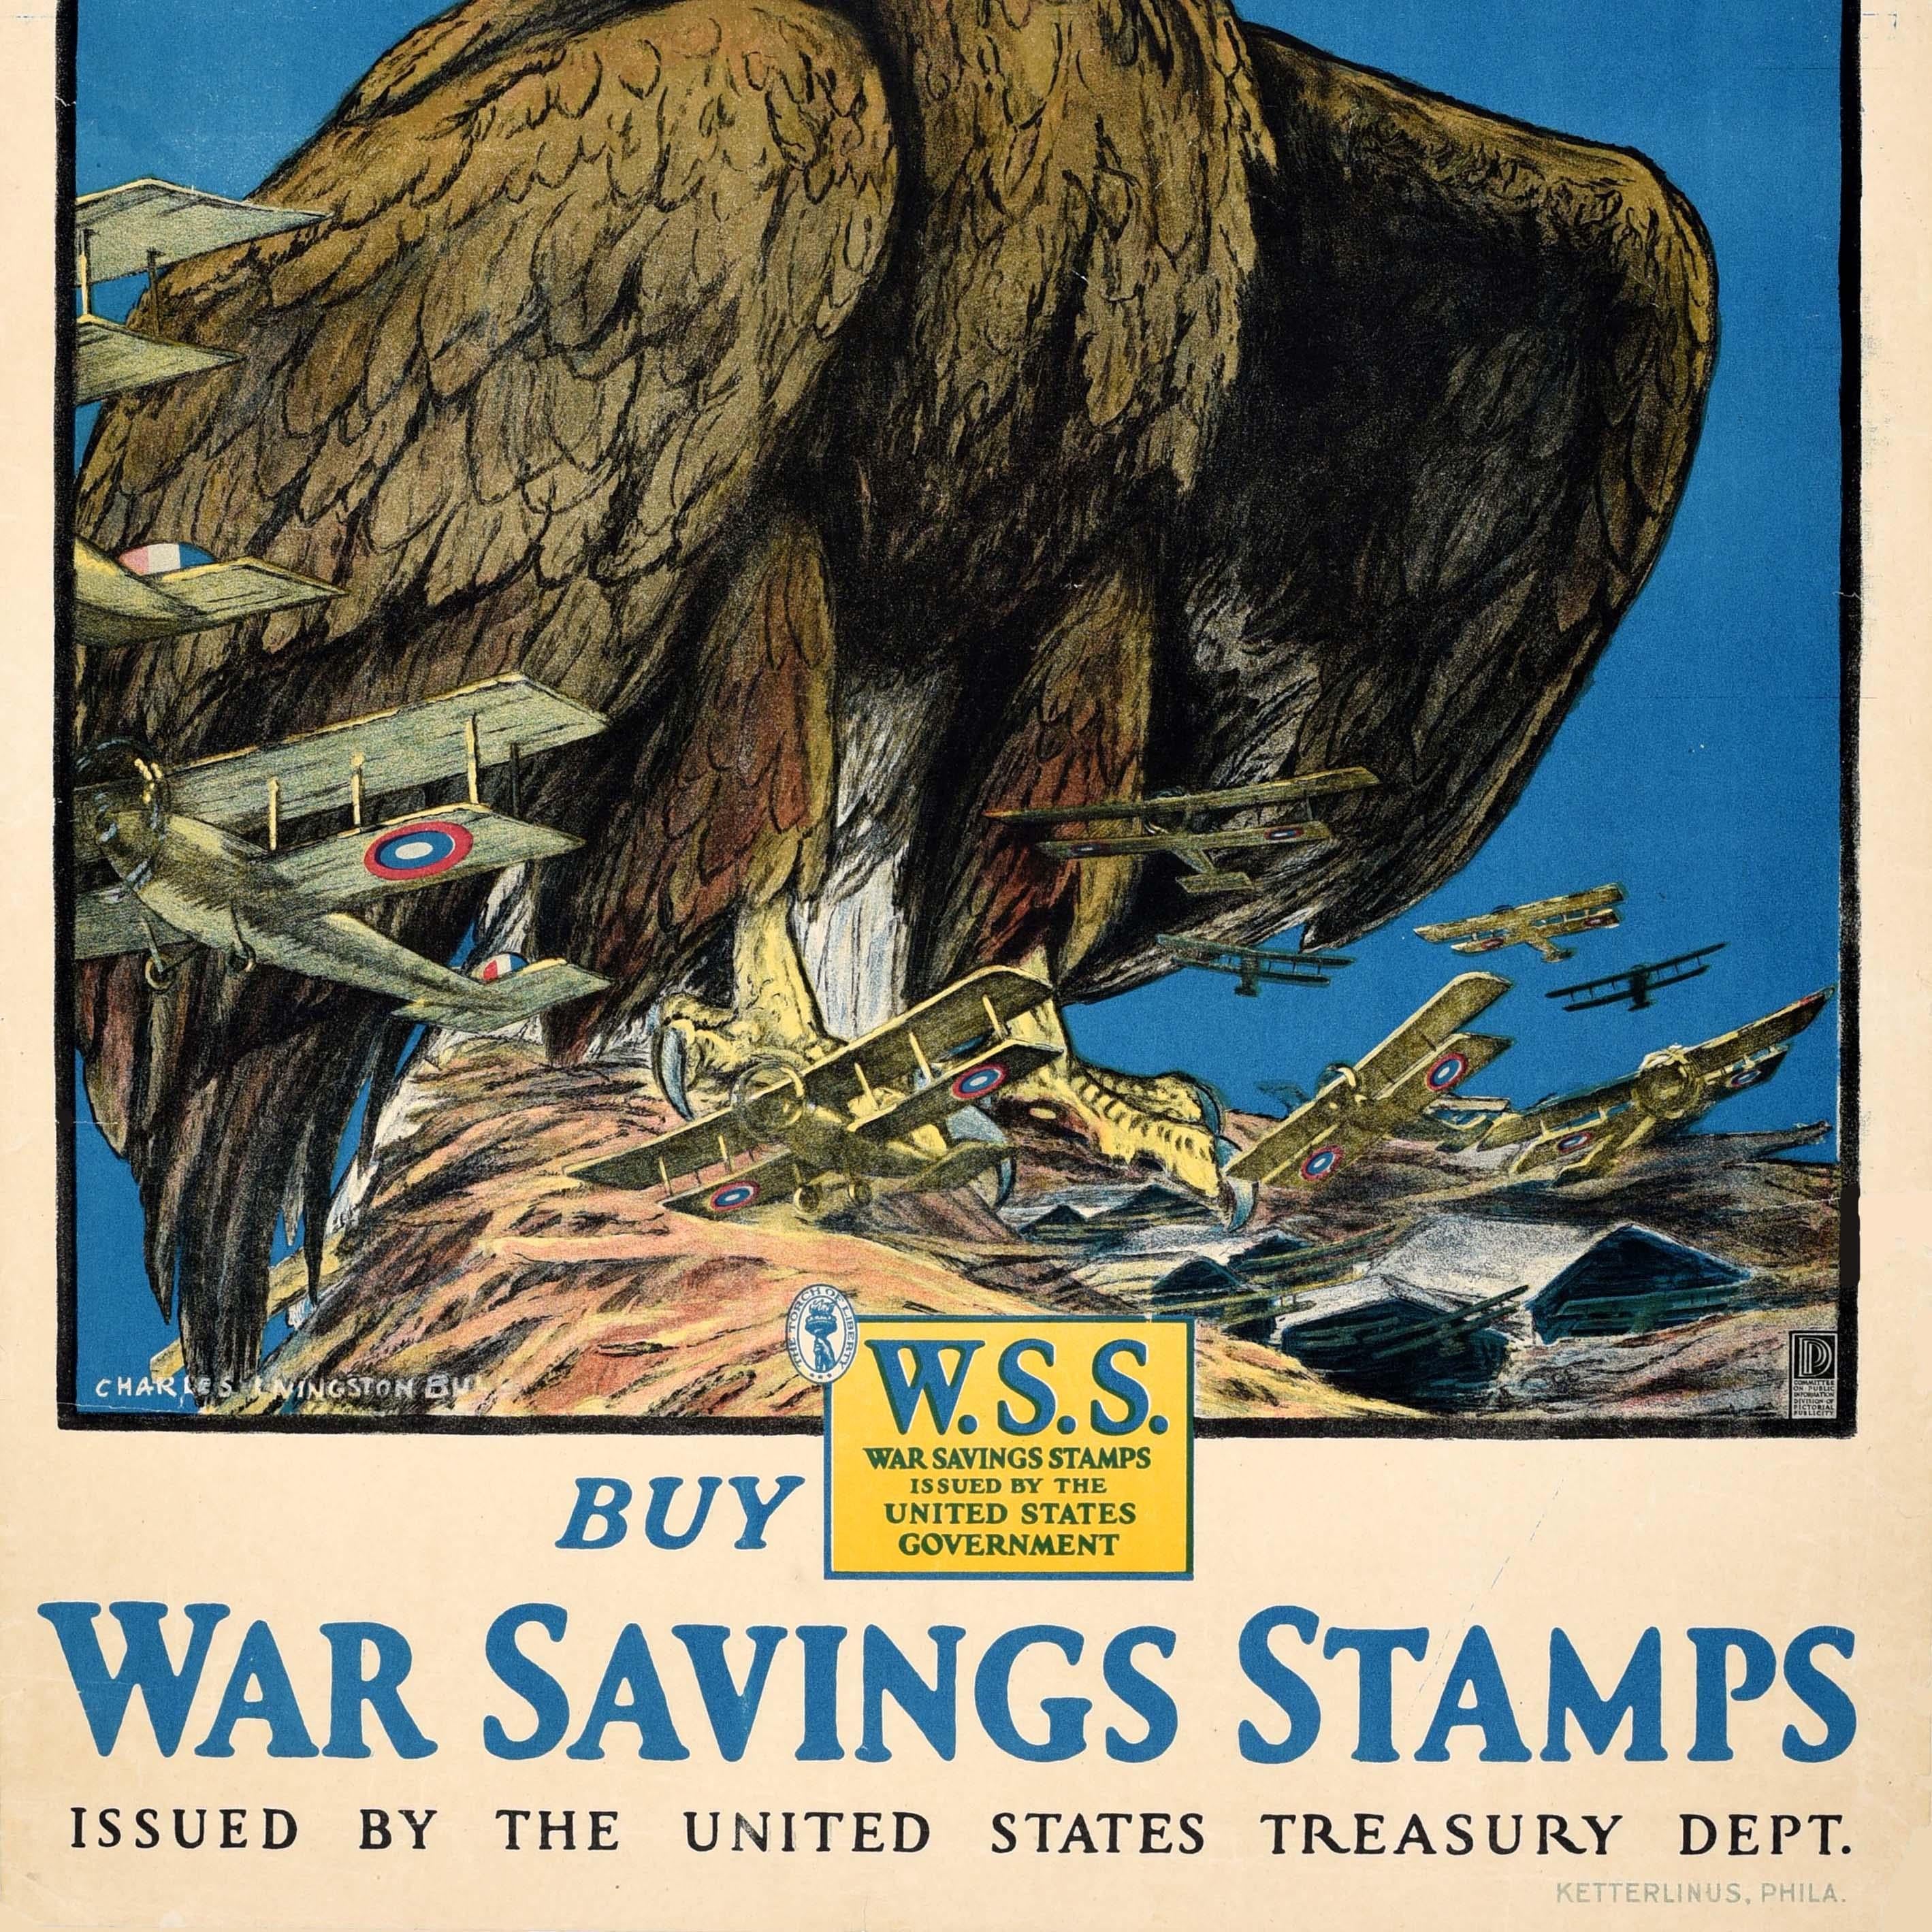 Original antike World War One Poster zur Unterstützung der Home Front War Effort - Keep Him Free Buy War Savings Stamps von der United States Treasury Dept ausgestellt - mit dynamischen Kunstwerk von der amerikanischen Künstler für seine